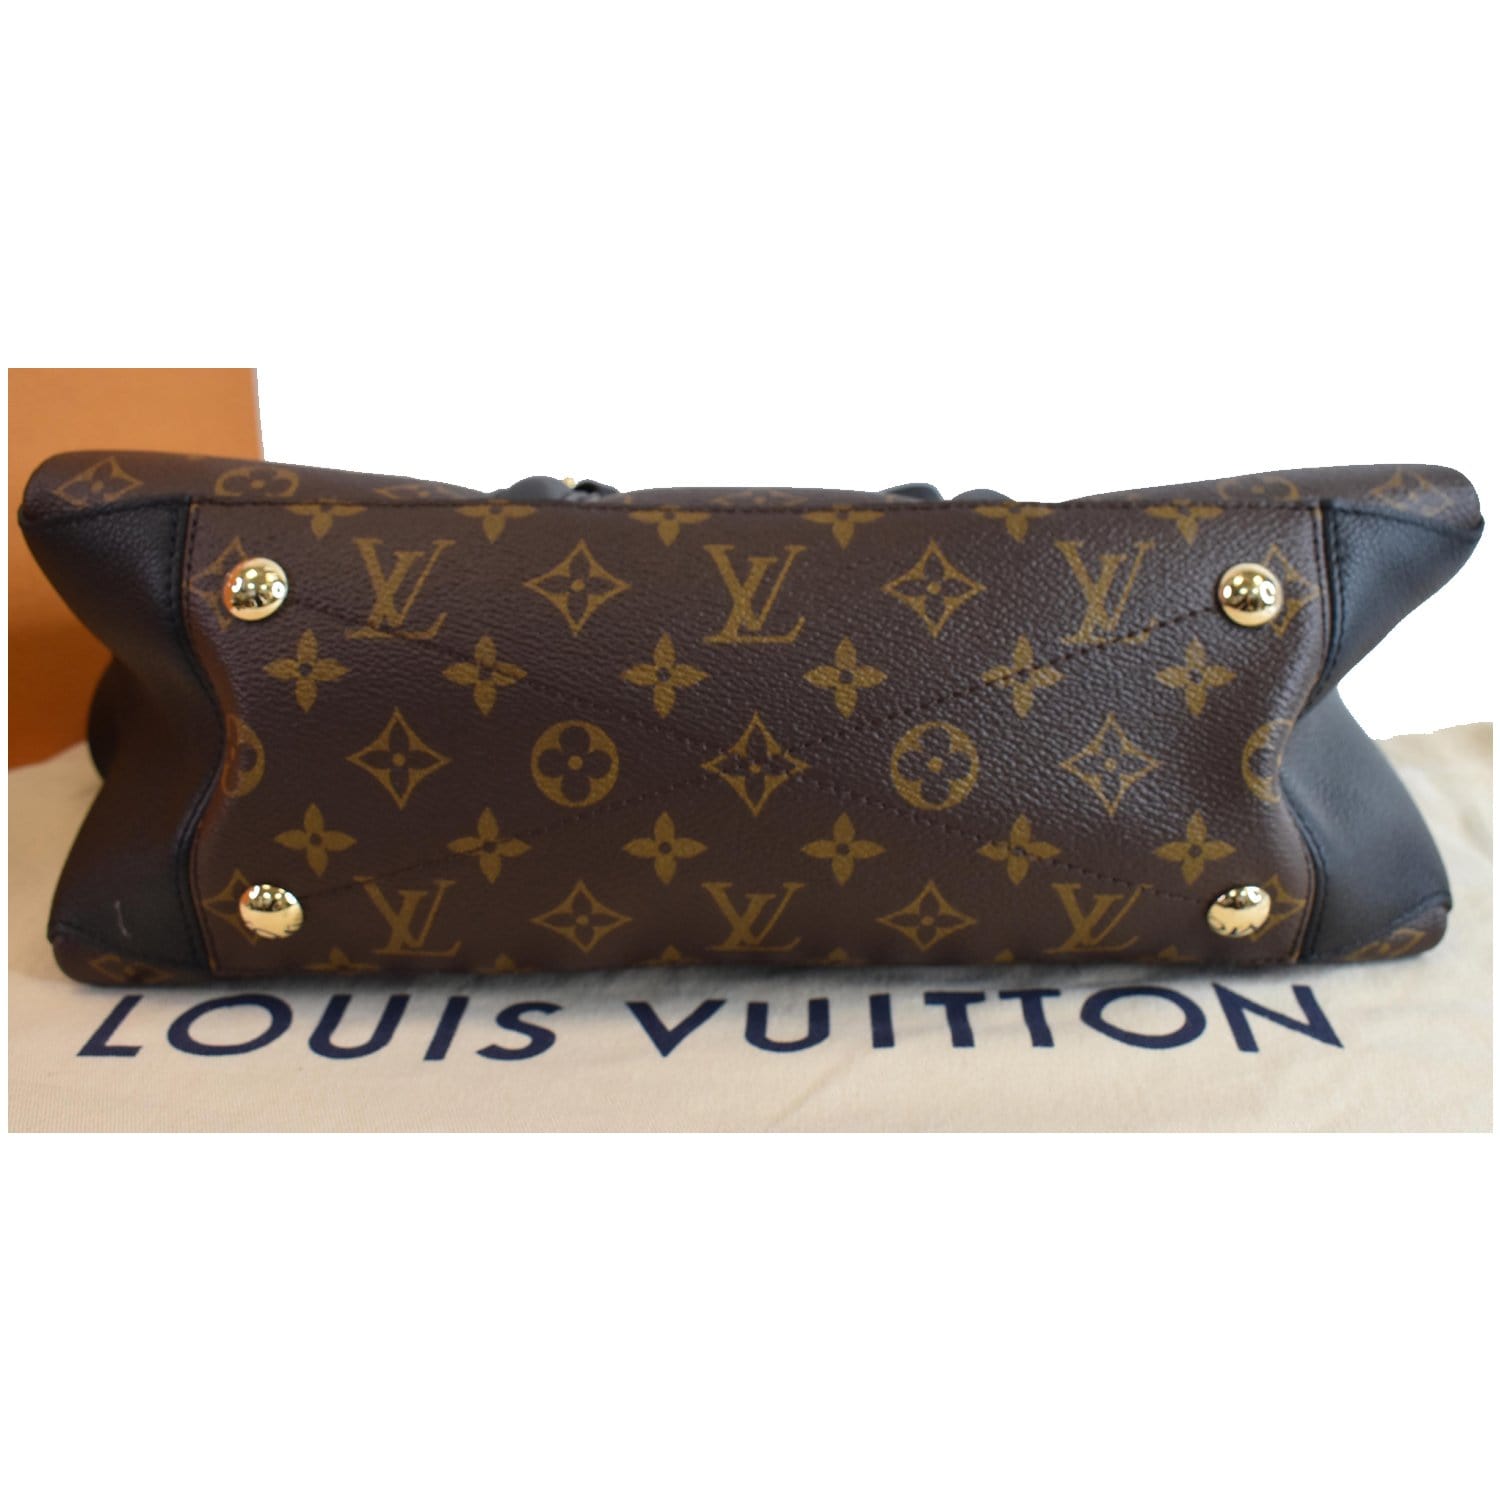 Louis Vuitton Soufflot NV